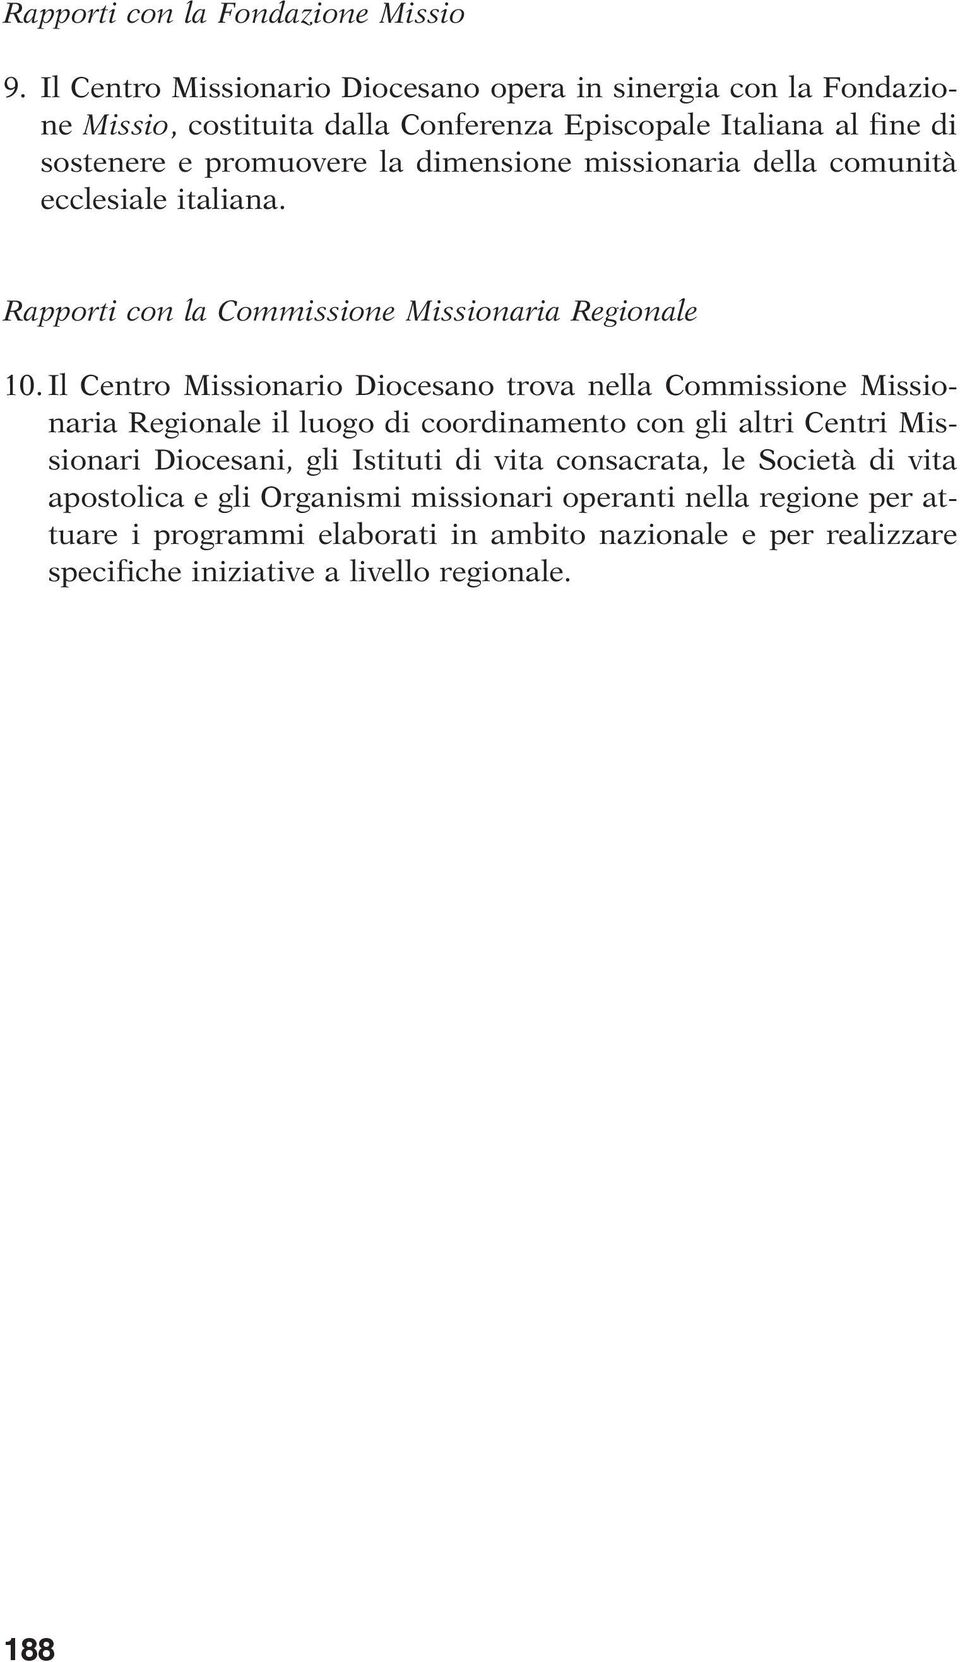 missionaria della comunità ecclesiale italiana. Rapporti con la Commissione Missionaria Regionale 10.